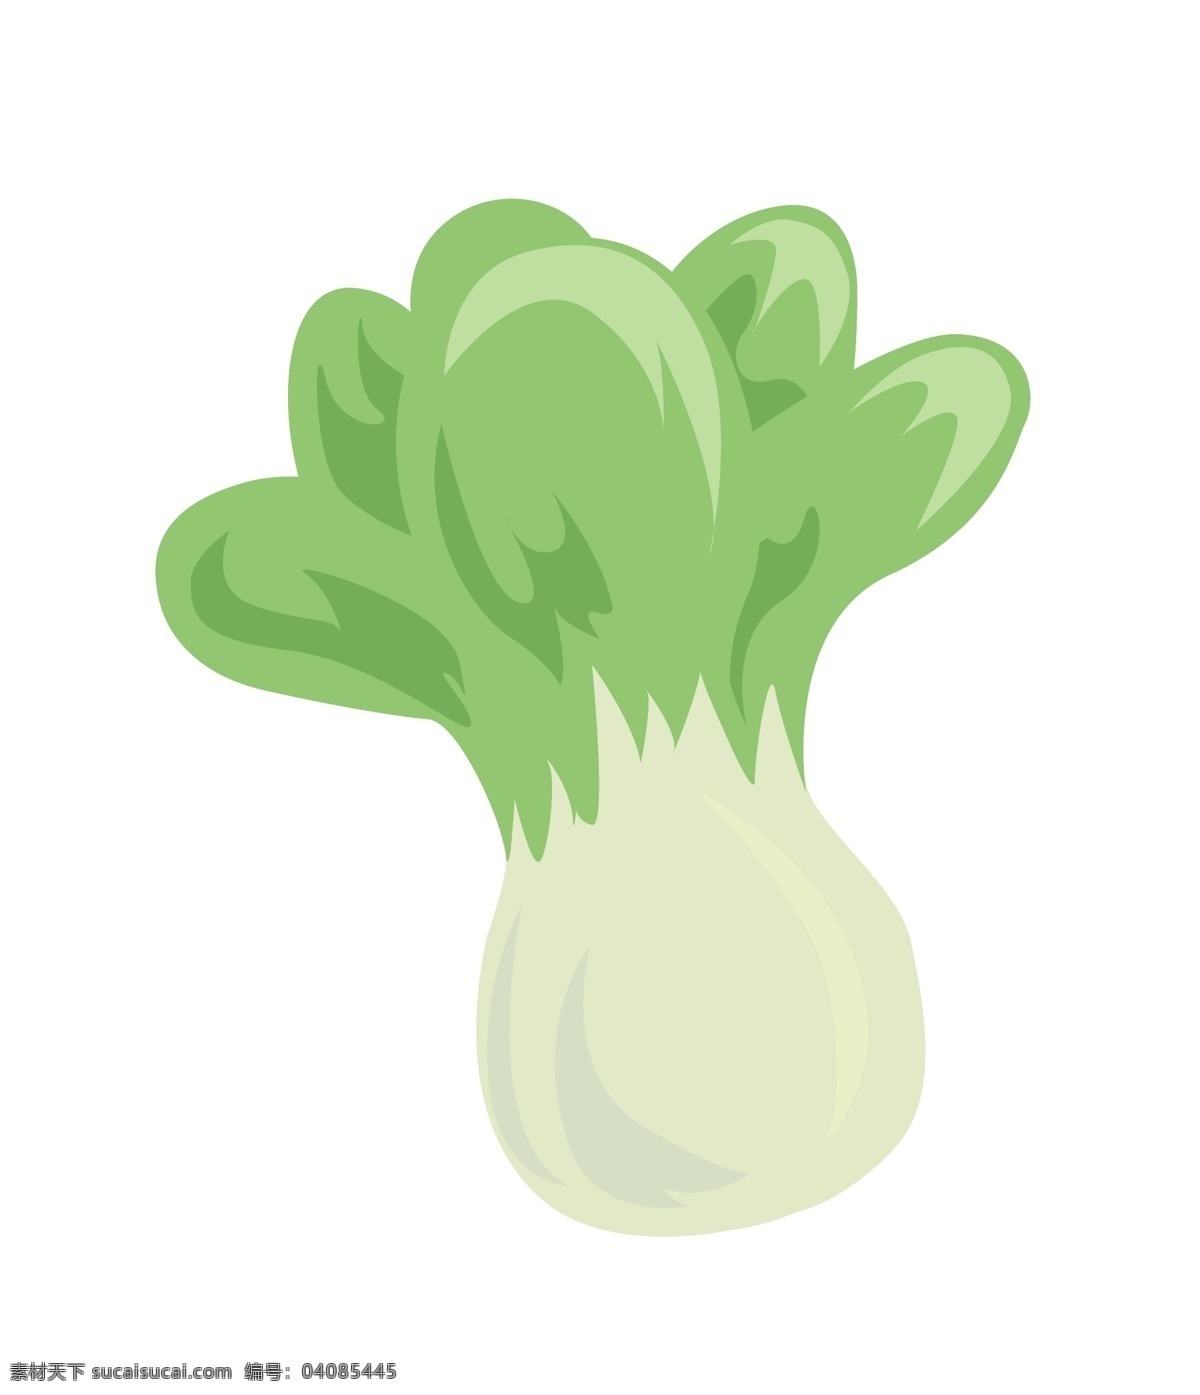 冬季 食物 白菜 手绘 冬季食物 冬天 插画 手绘图 矢量图 绿色 白色 青菜 蔬菜 绿色食物 绿色植物